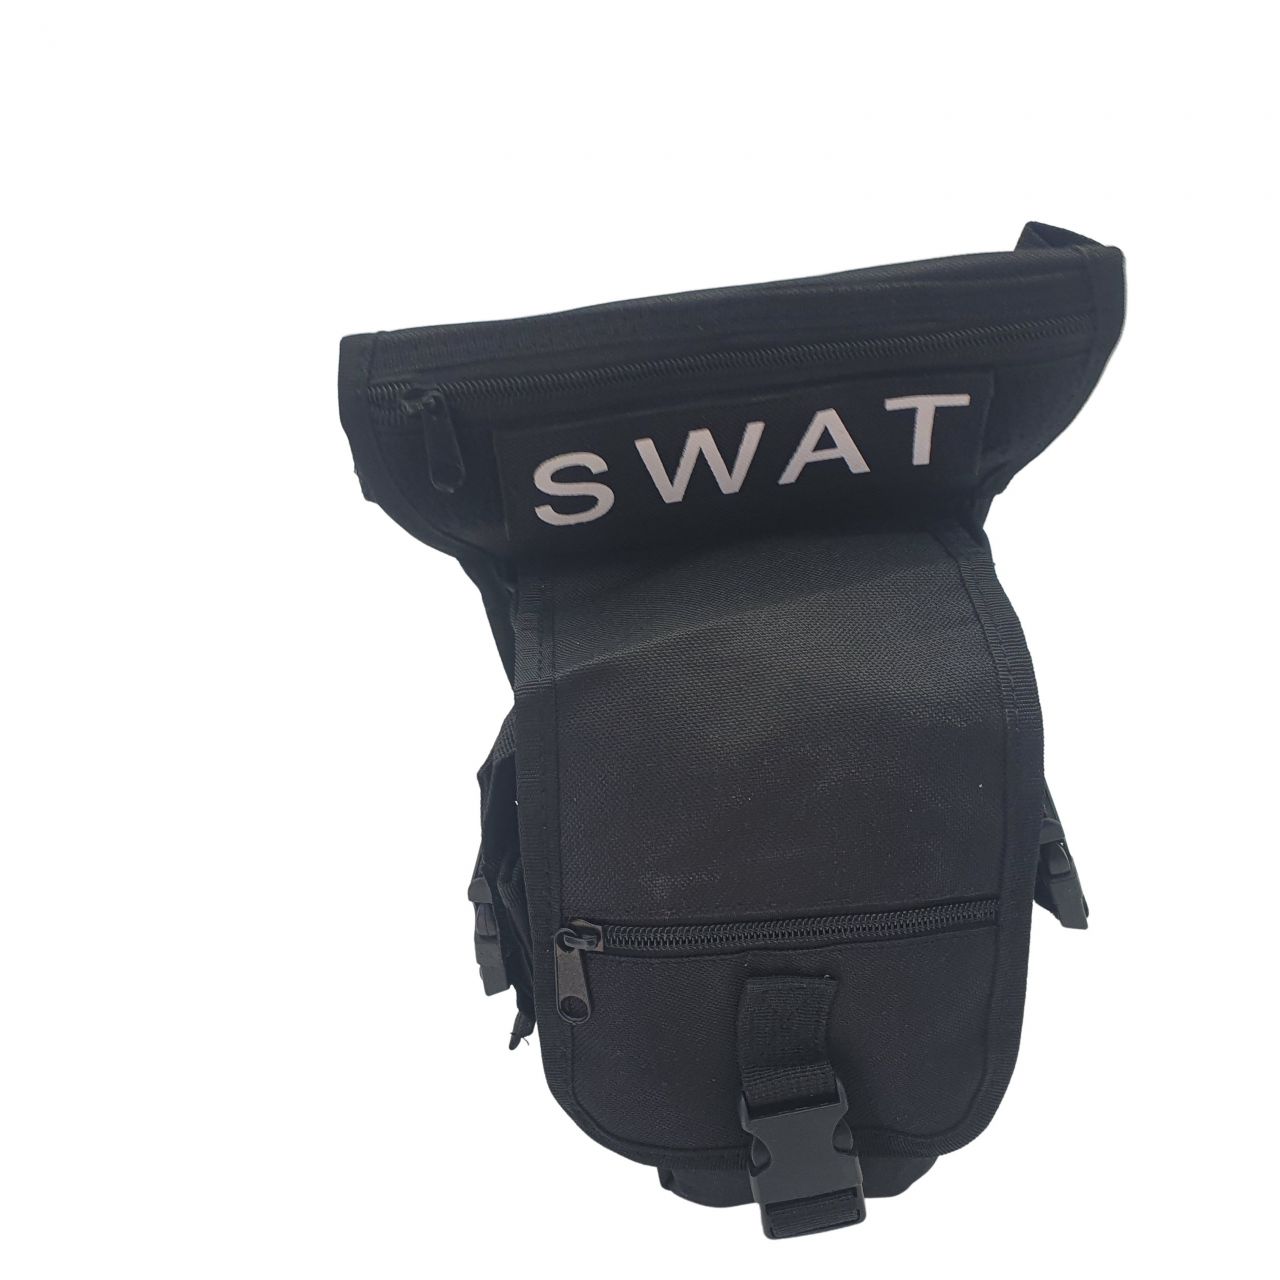 SWAT torbica oko noge crna